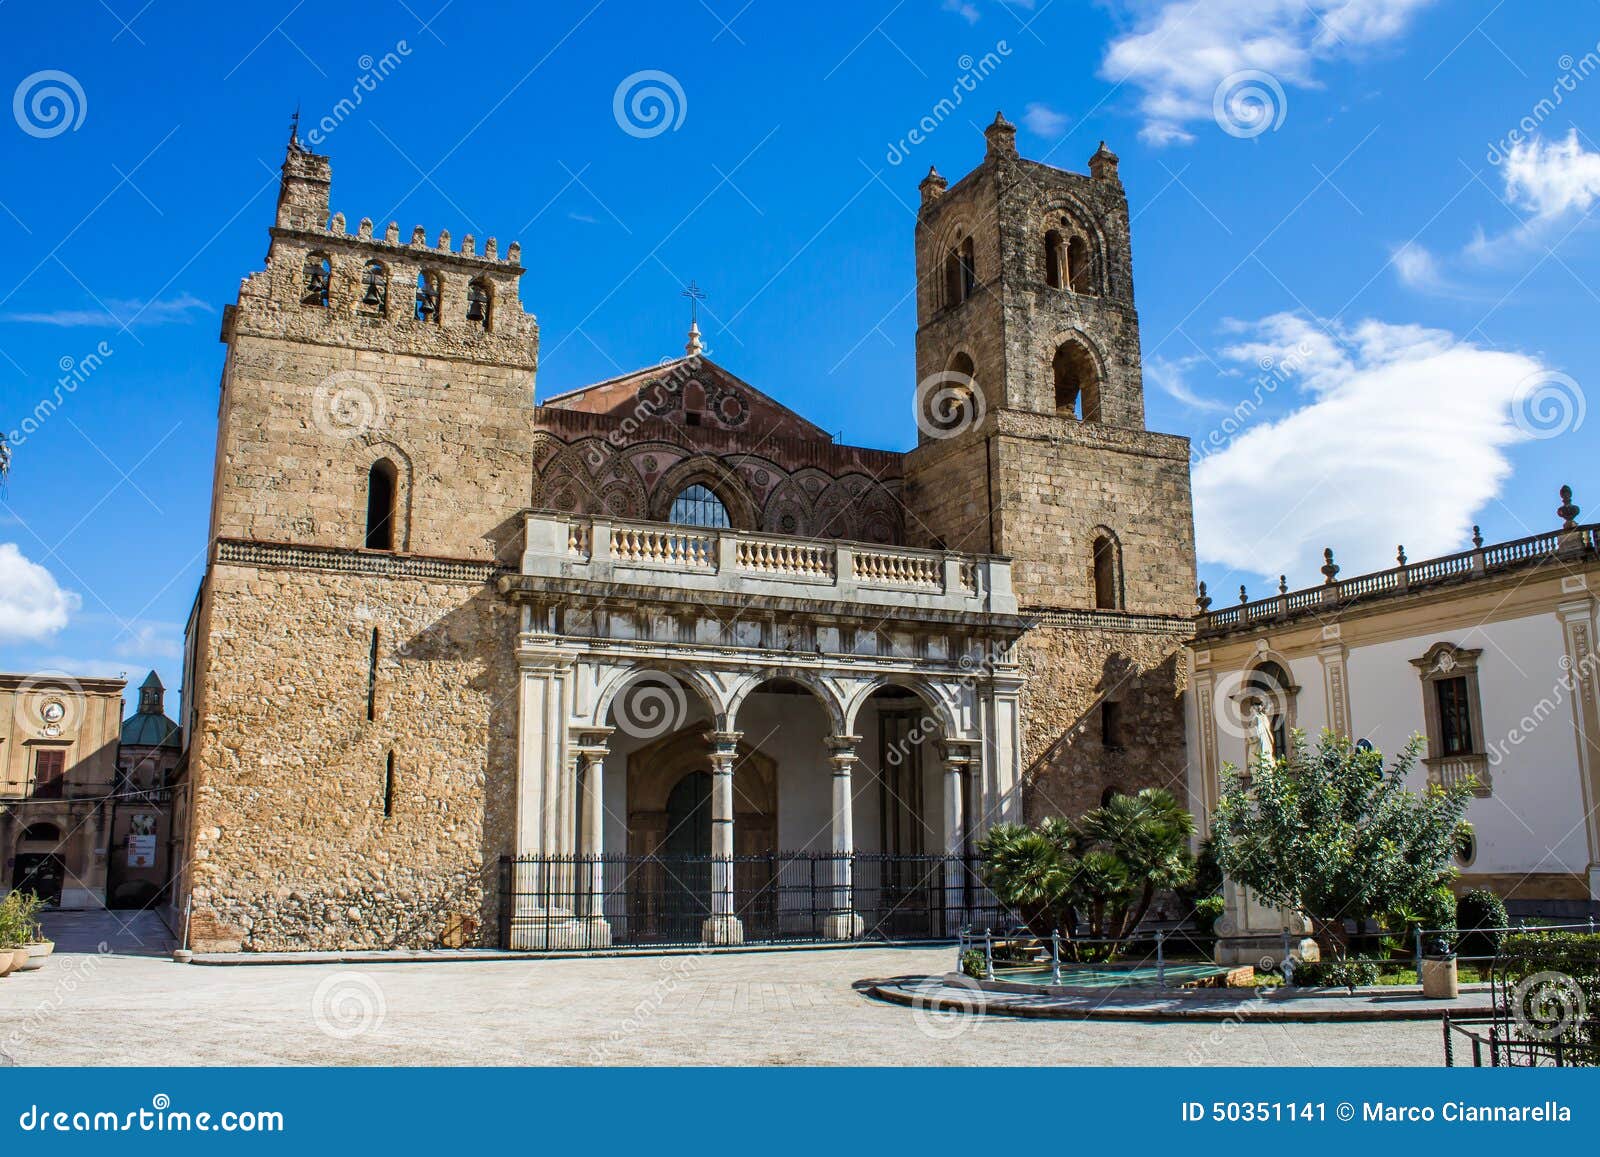 Die Kathedrale Von Monreale, Nahe Palermo, Italien Stockbild - Bild von ...